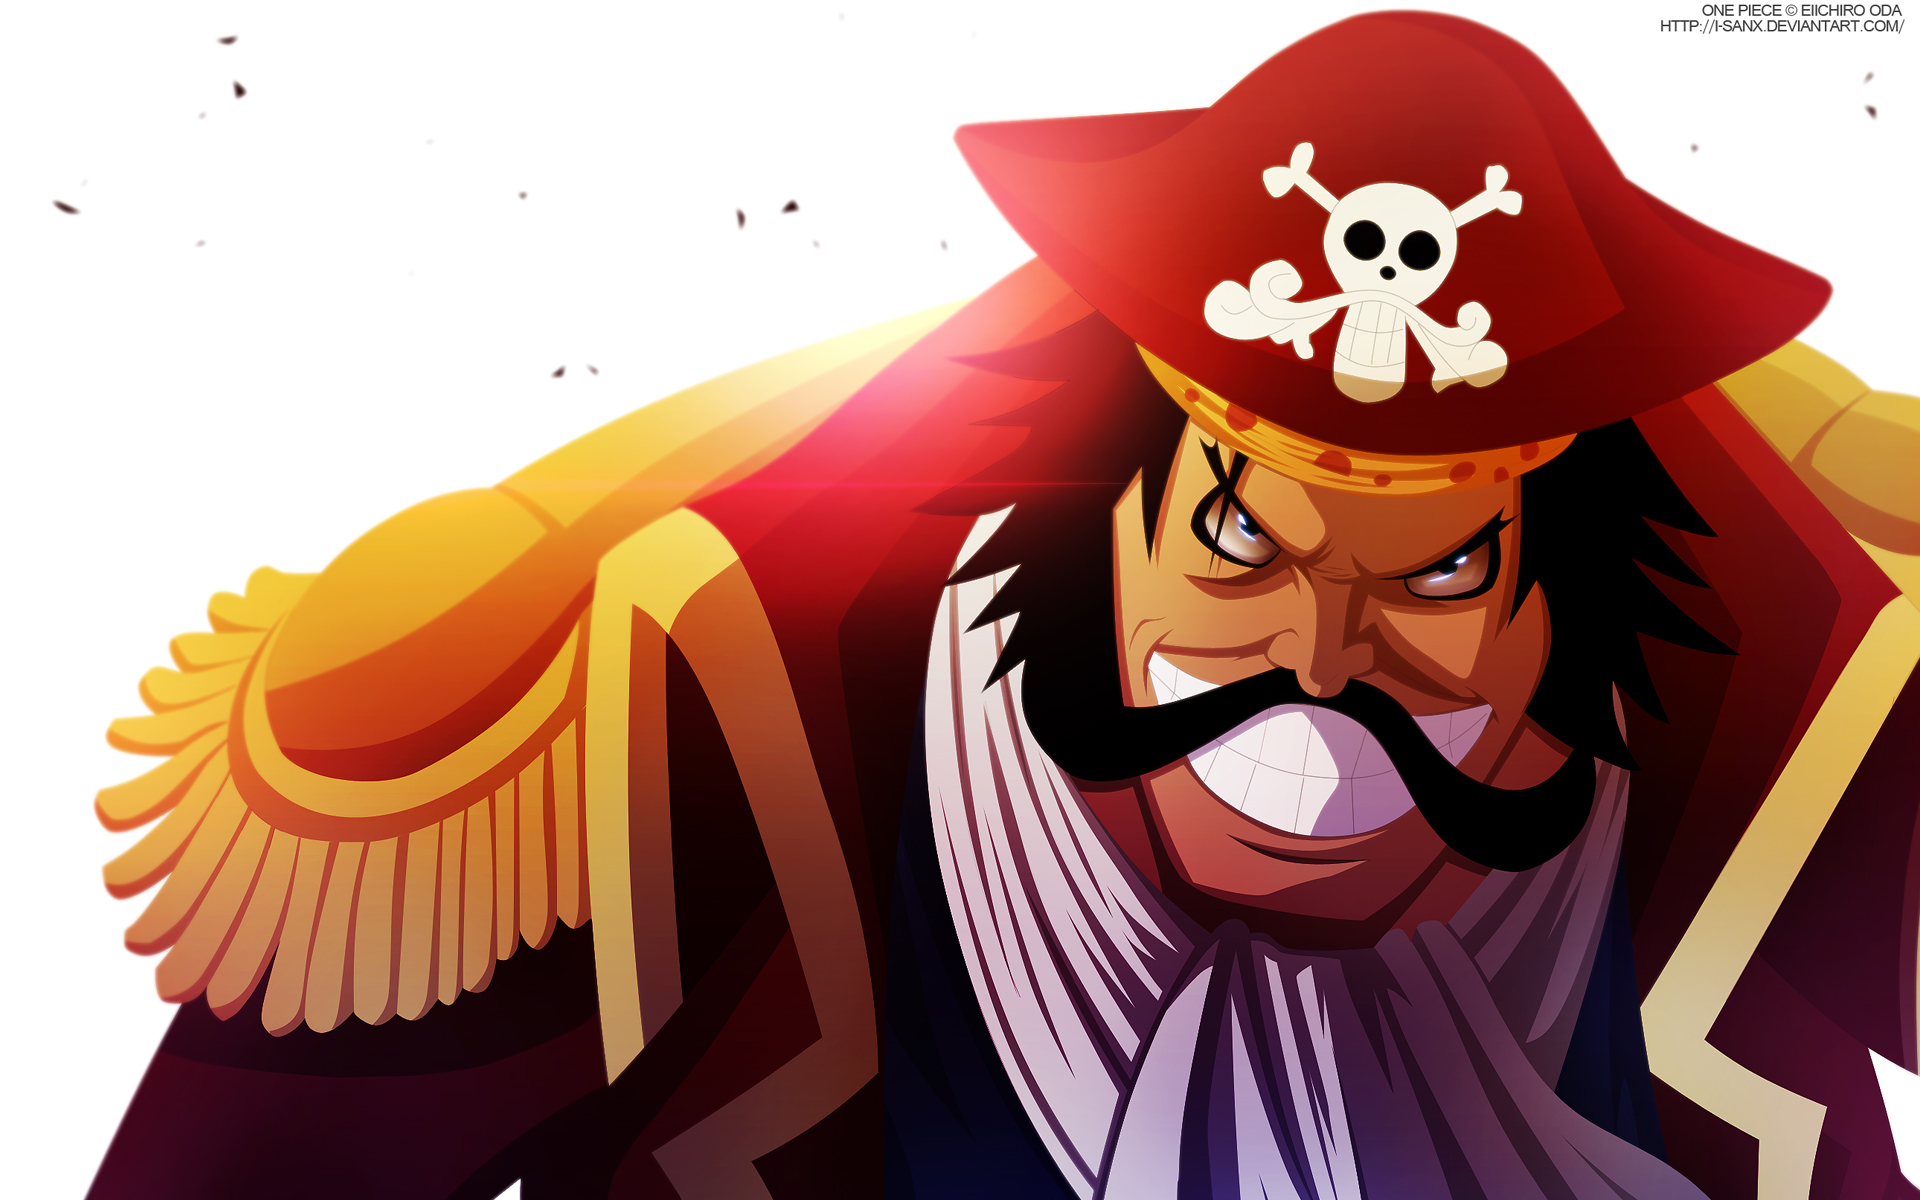 ワンピースネタバレ速報 ロジャー海賊団の三番手はスコッパー ギャバン イヌアラシ公爵はロジャー海賊団だった 最新